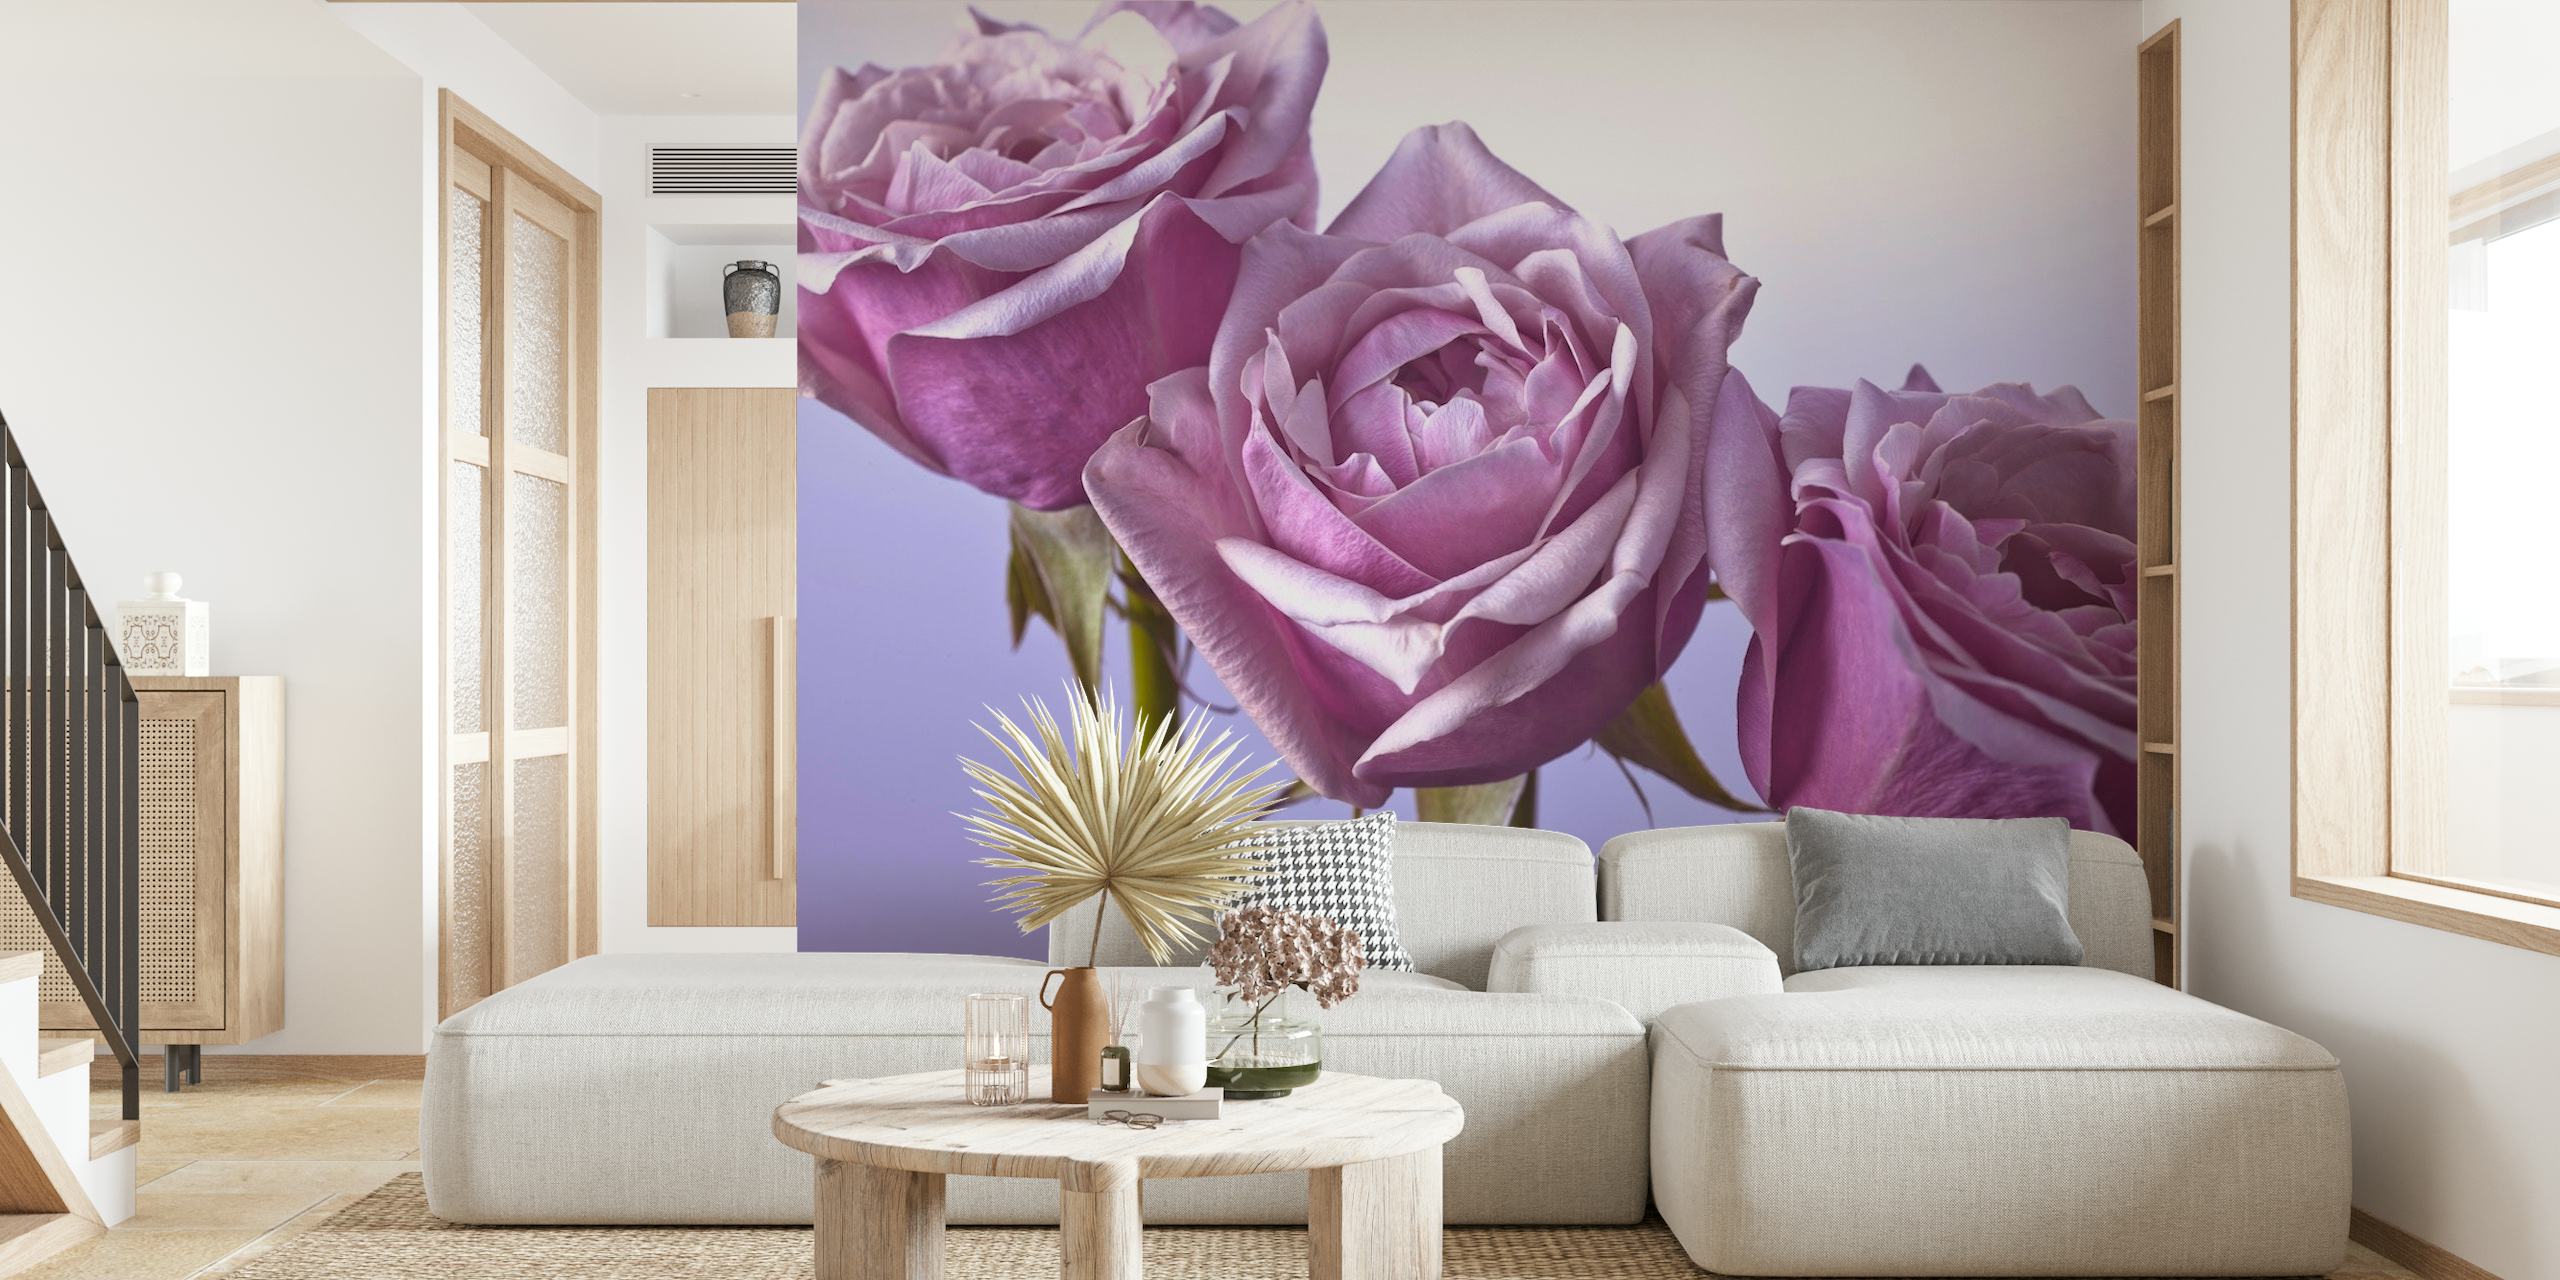 Yksityiskohtainen seinämaalaus kolmesta violetista ruususta pehmeää taustaa vasten